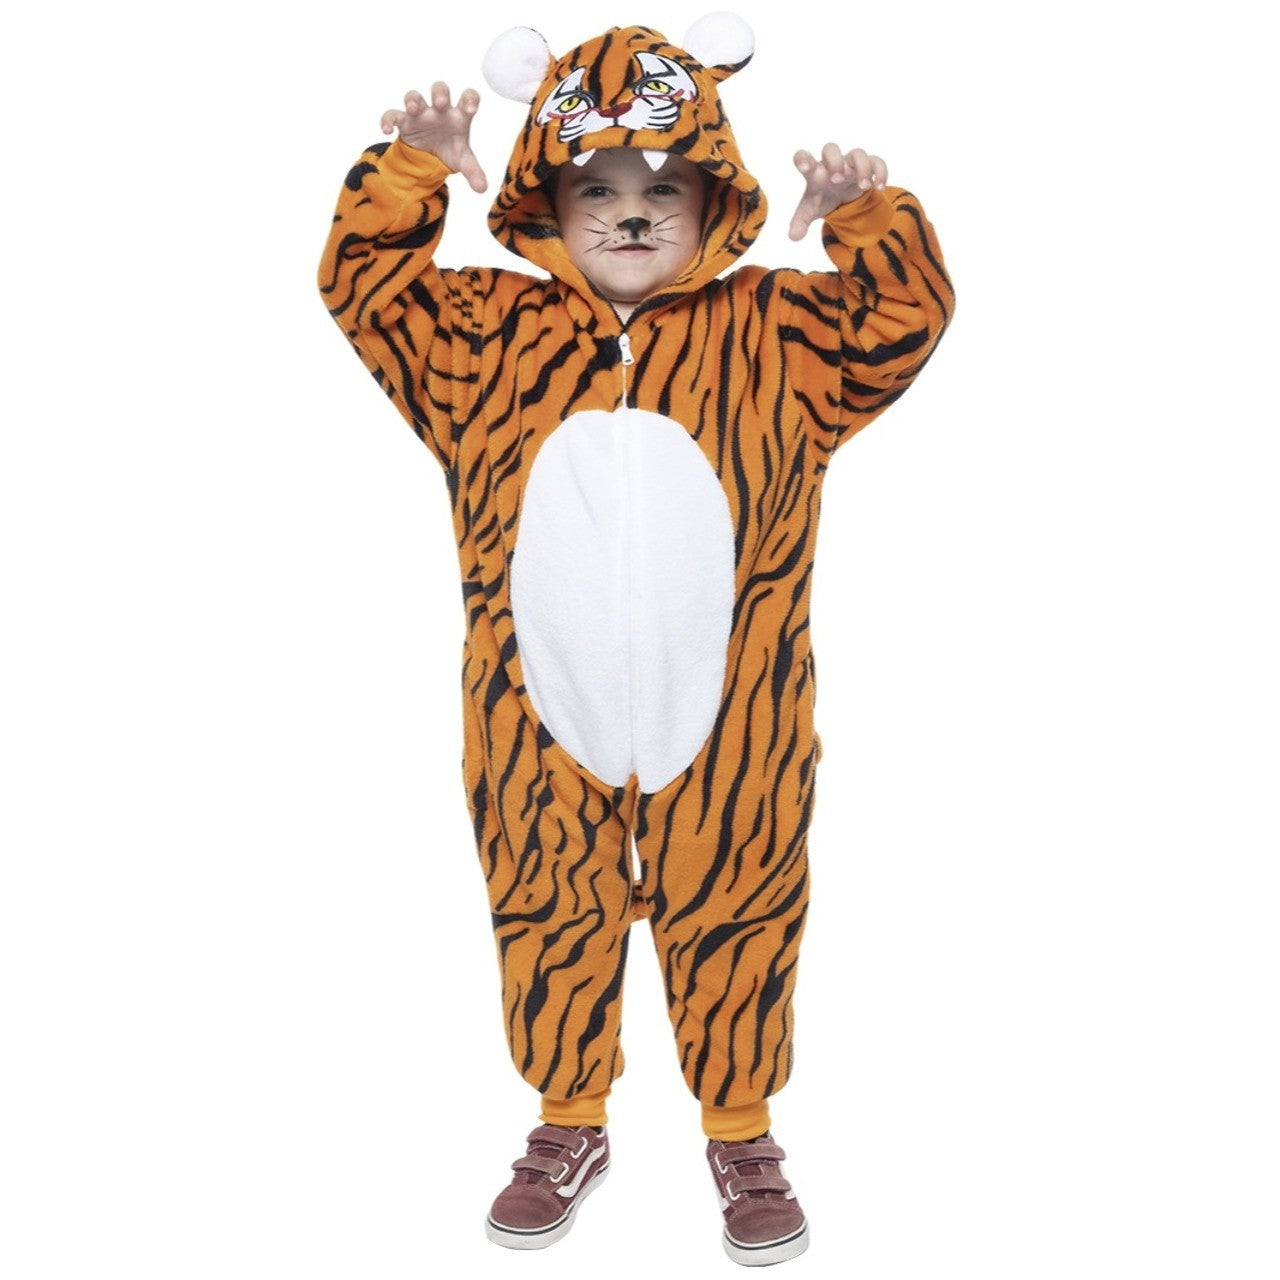 Acquista online costume da tigre del Bengala infantile